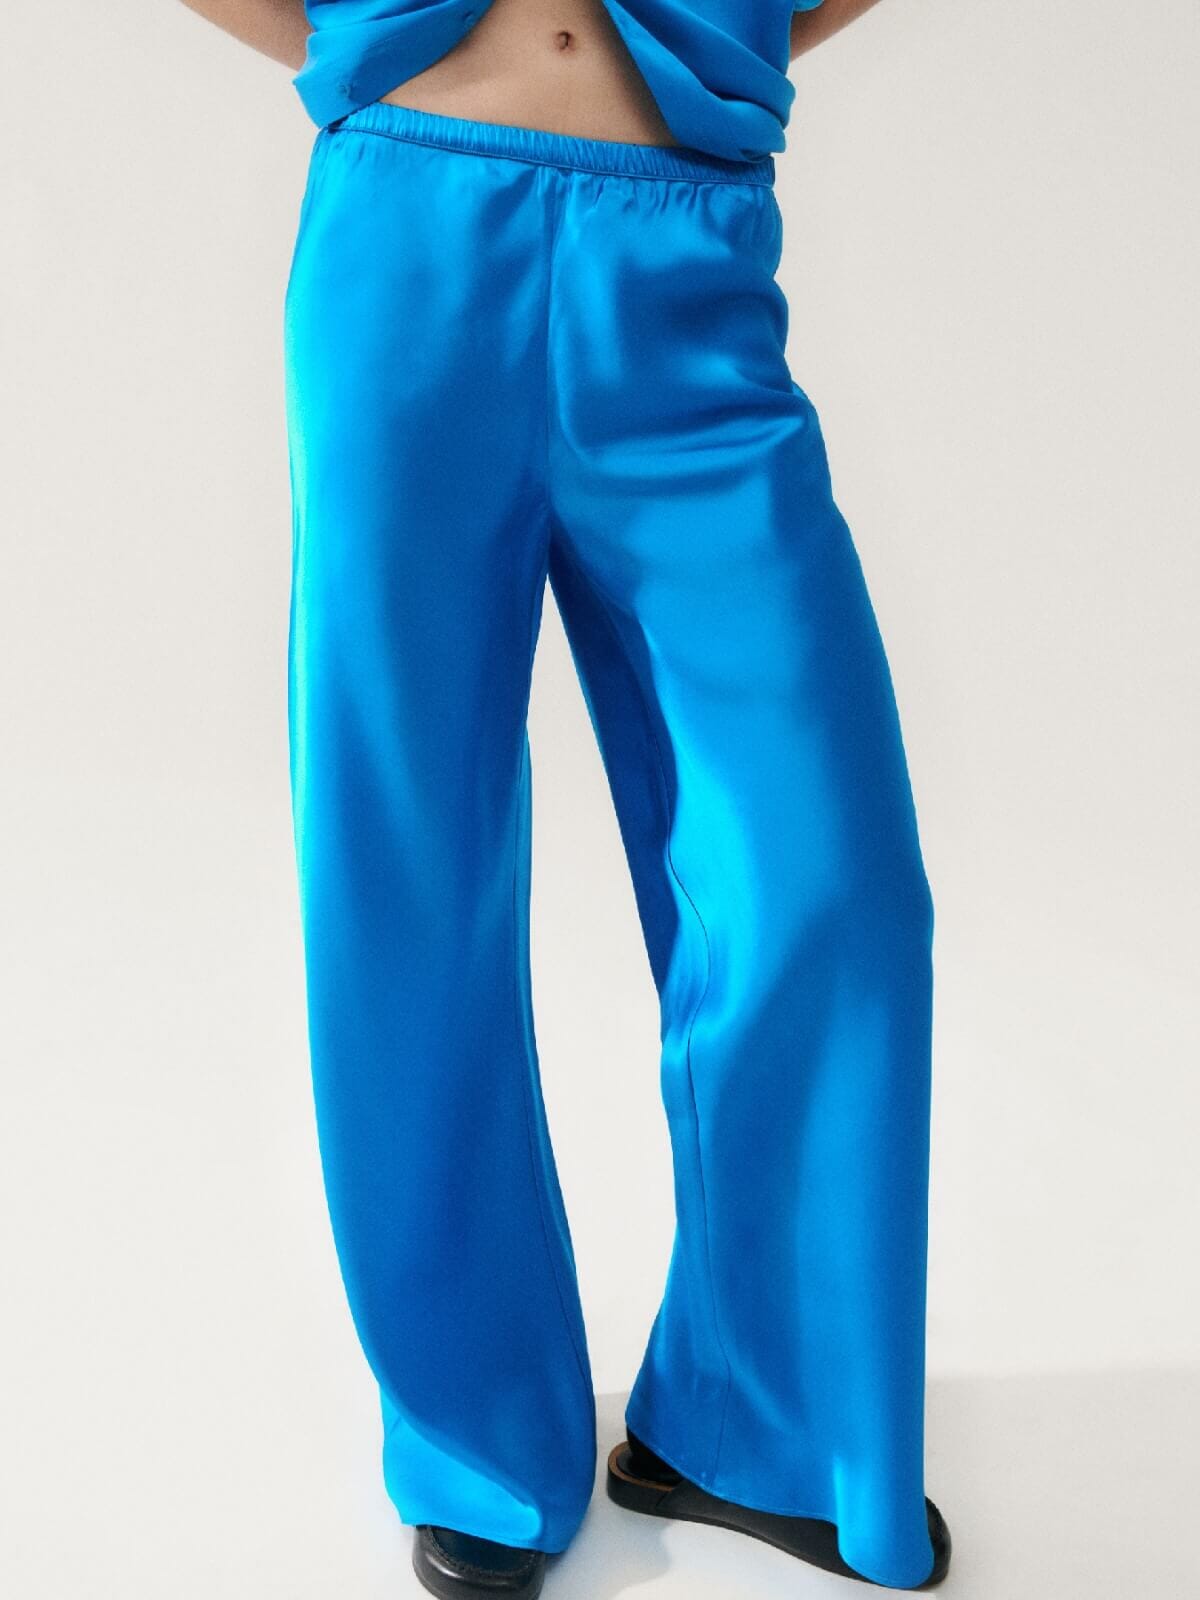 Silk Laundry | Bias Cut Pants - Coast Blue | Perlu